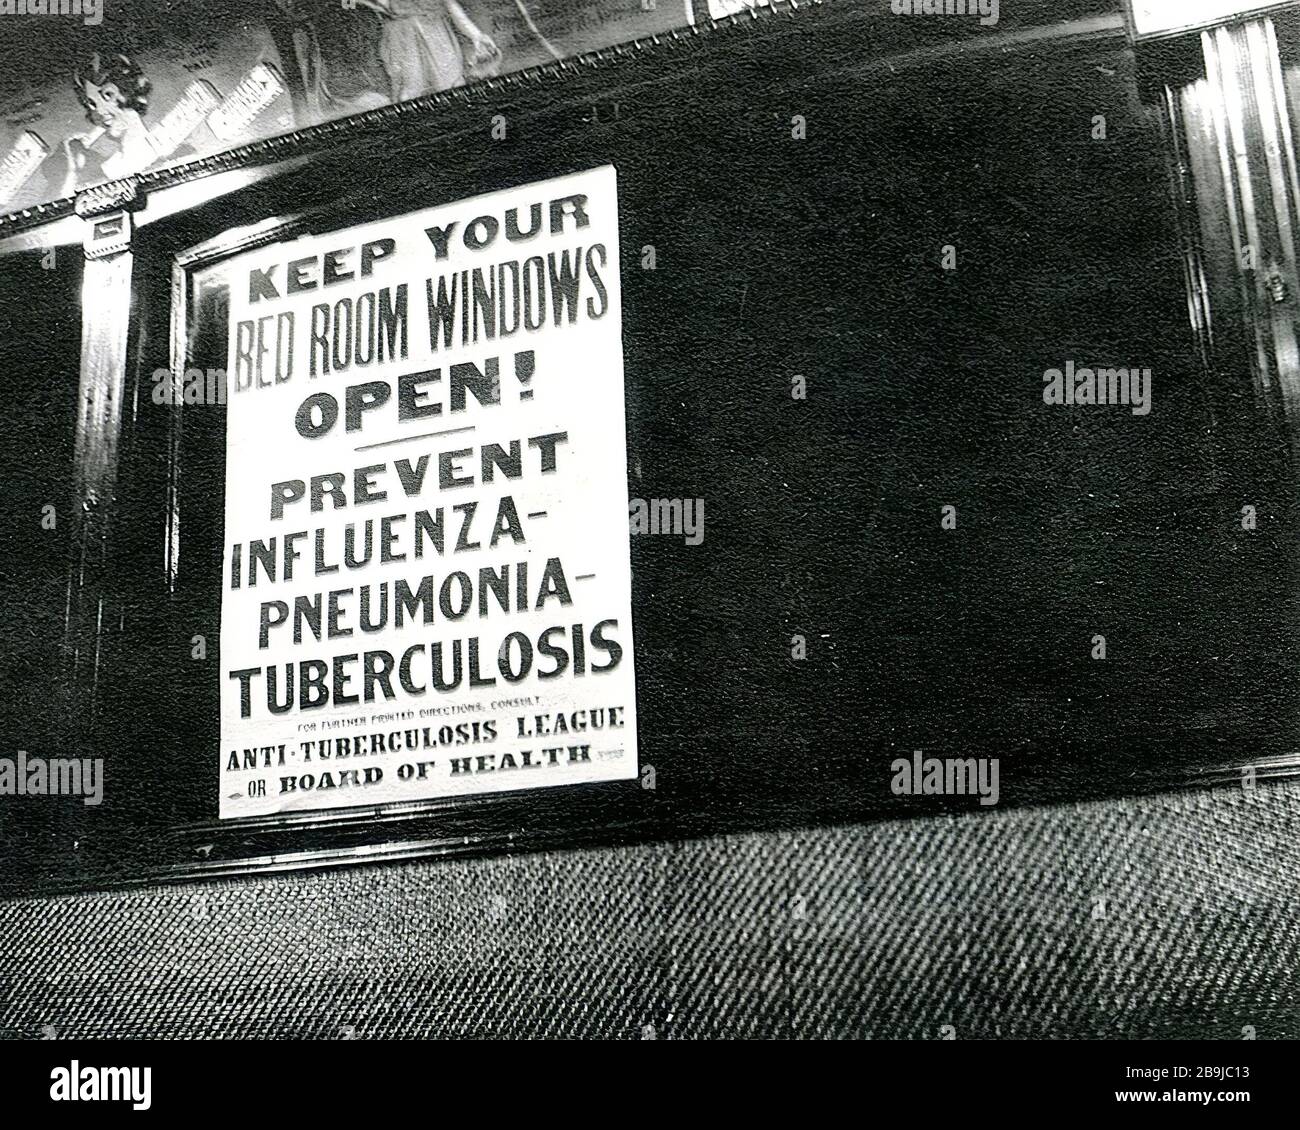 Ein Schild des Cincinnati Board of Health streetcar während der Epidemie, in dem Passagiere darüber unterrichtet werden, wie sie Grippe, Pneumonie und Tuberkulose verhindern können Stockfoto